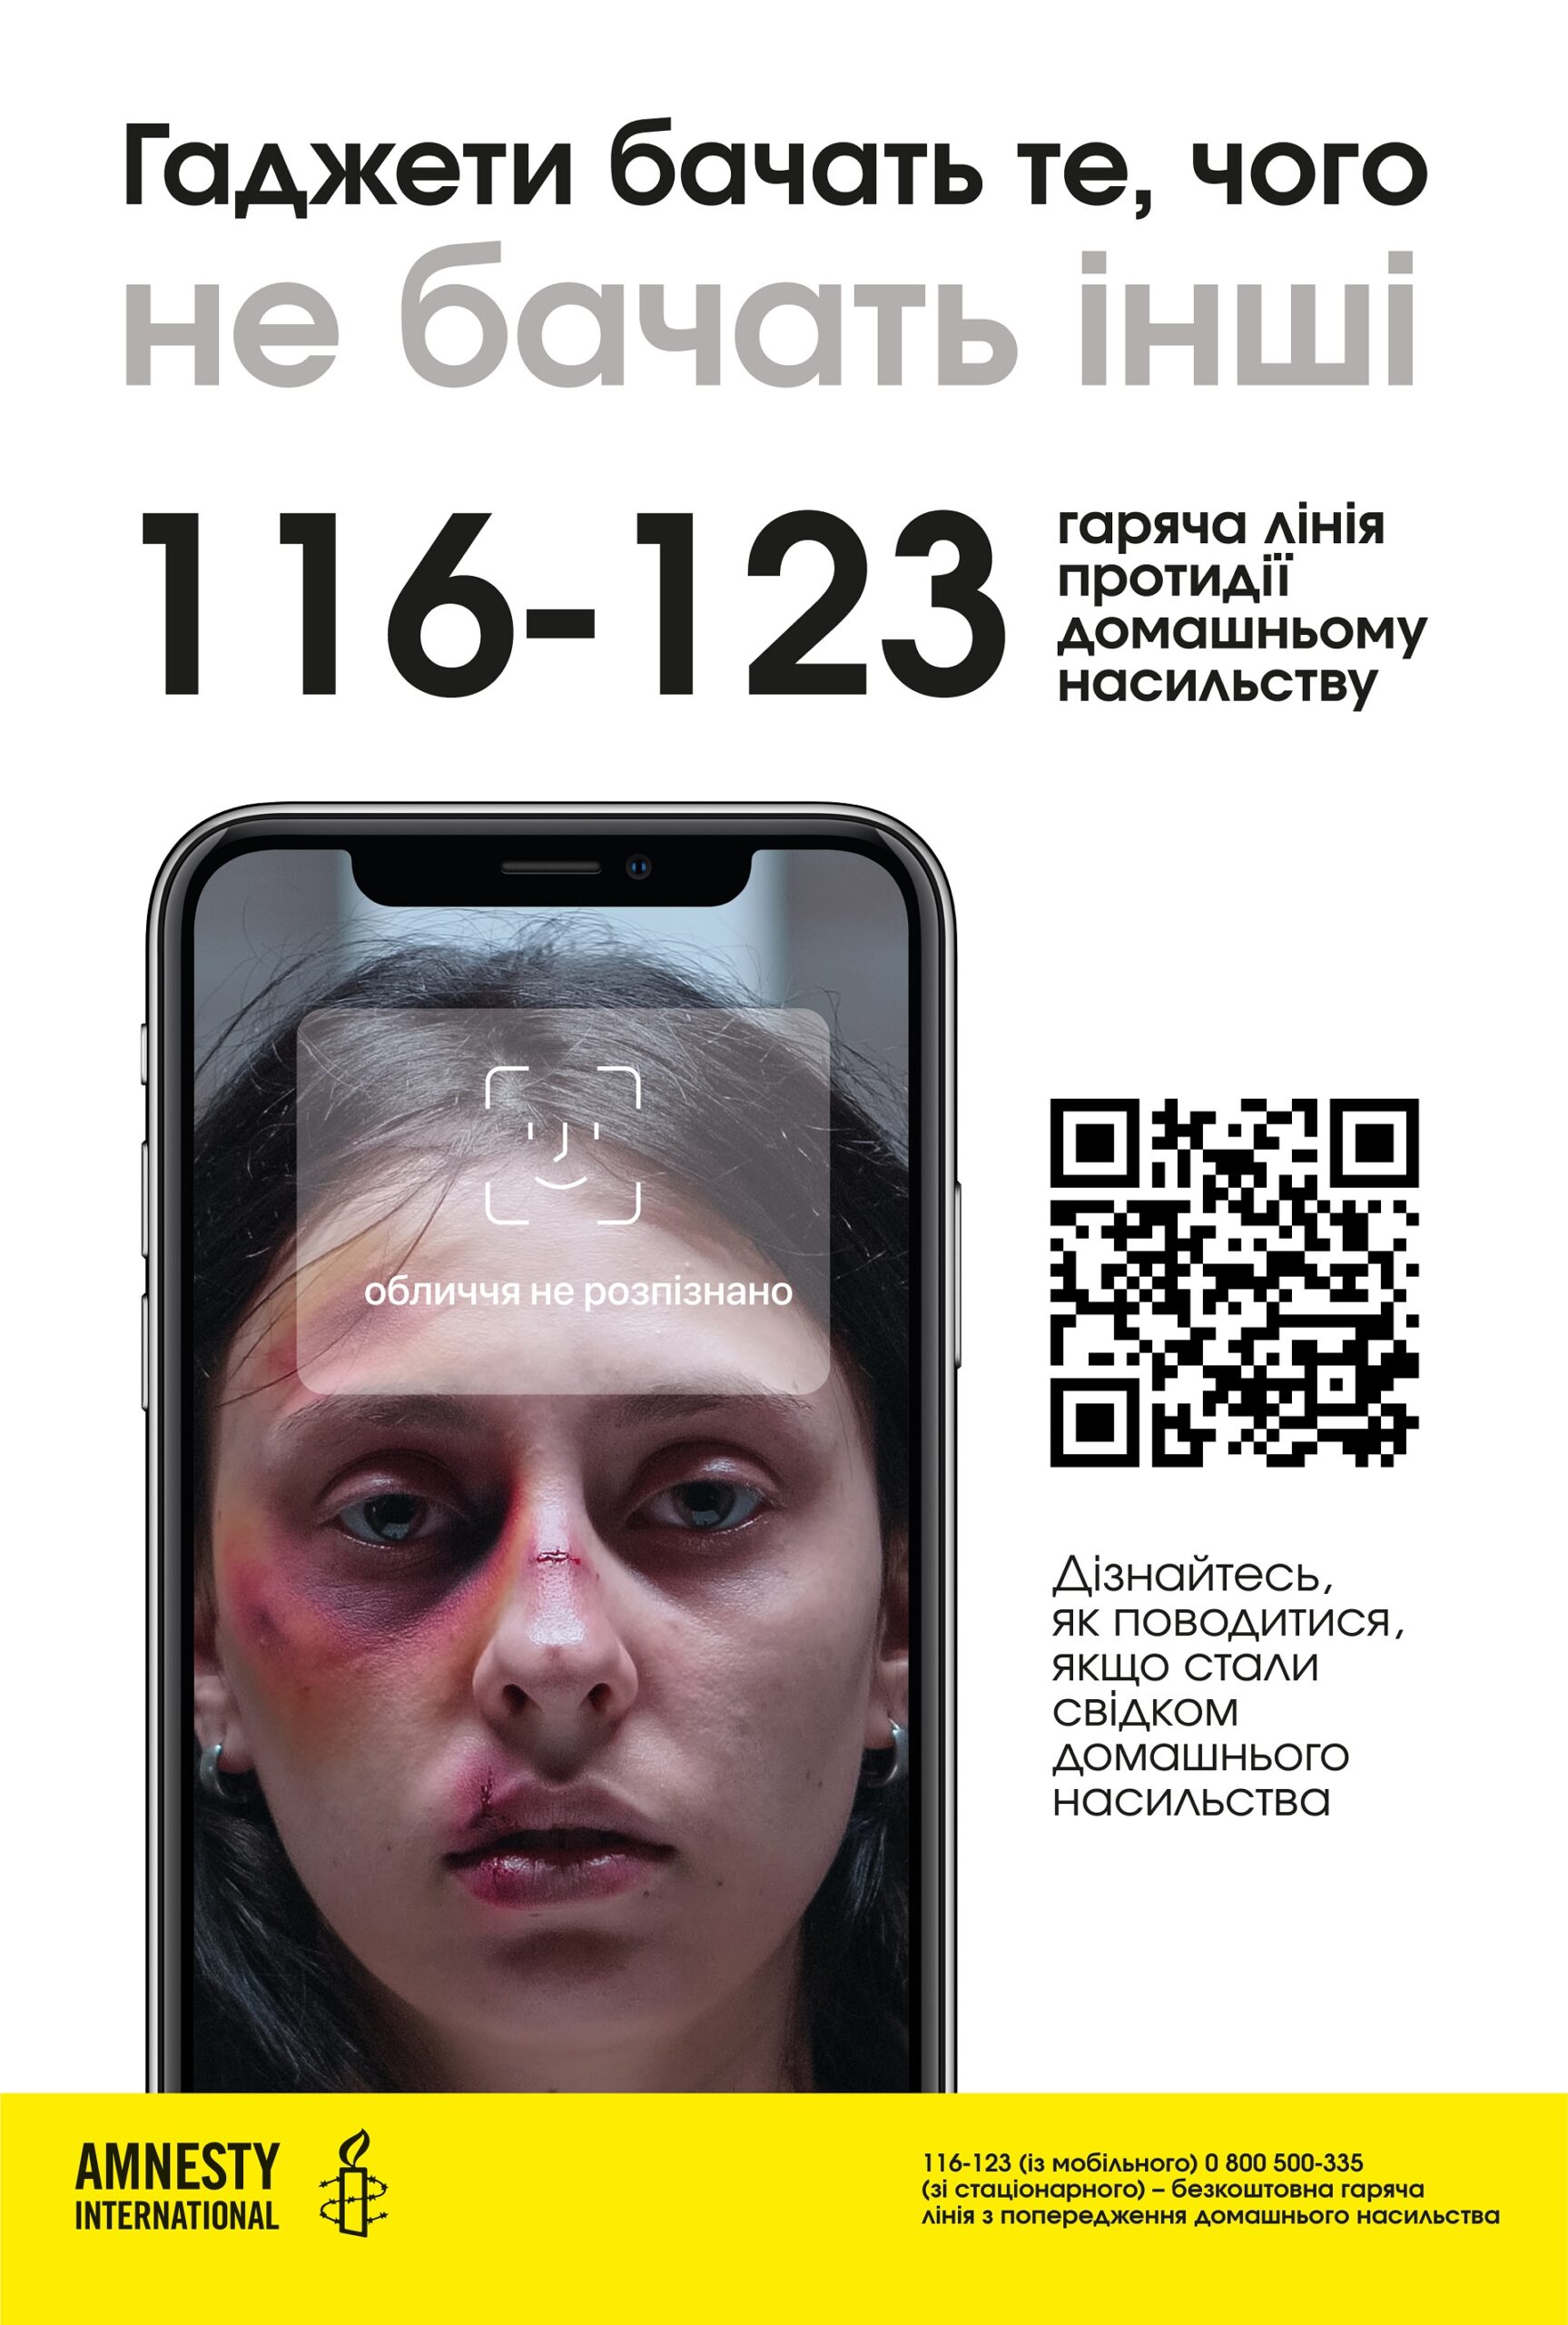 Як діяти свідкам домашнього насильства? Amnesty International презентувала інтерактивну платформу «Гаджеті бачити»-Фото 1